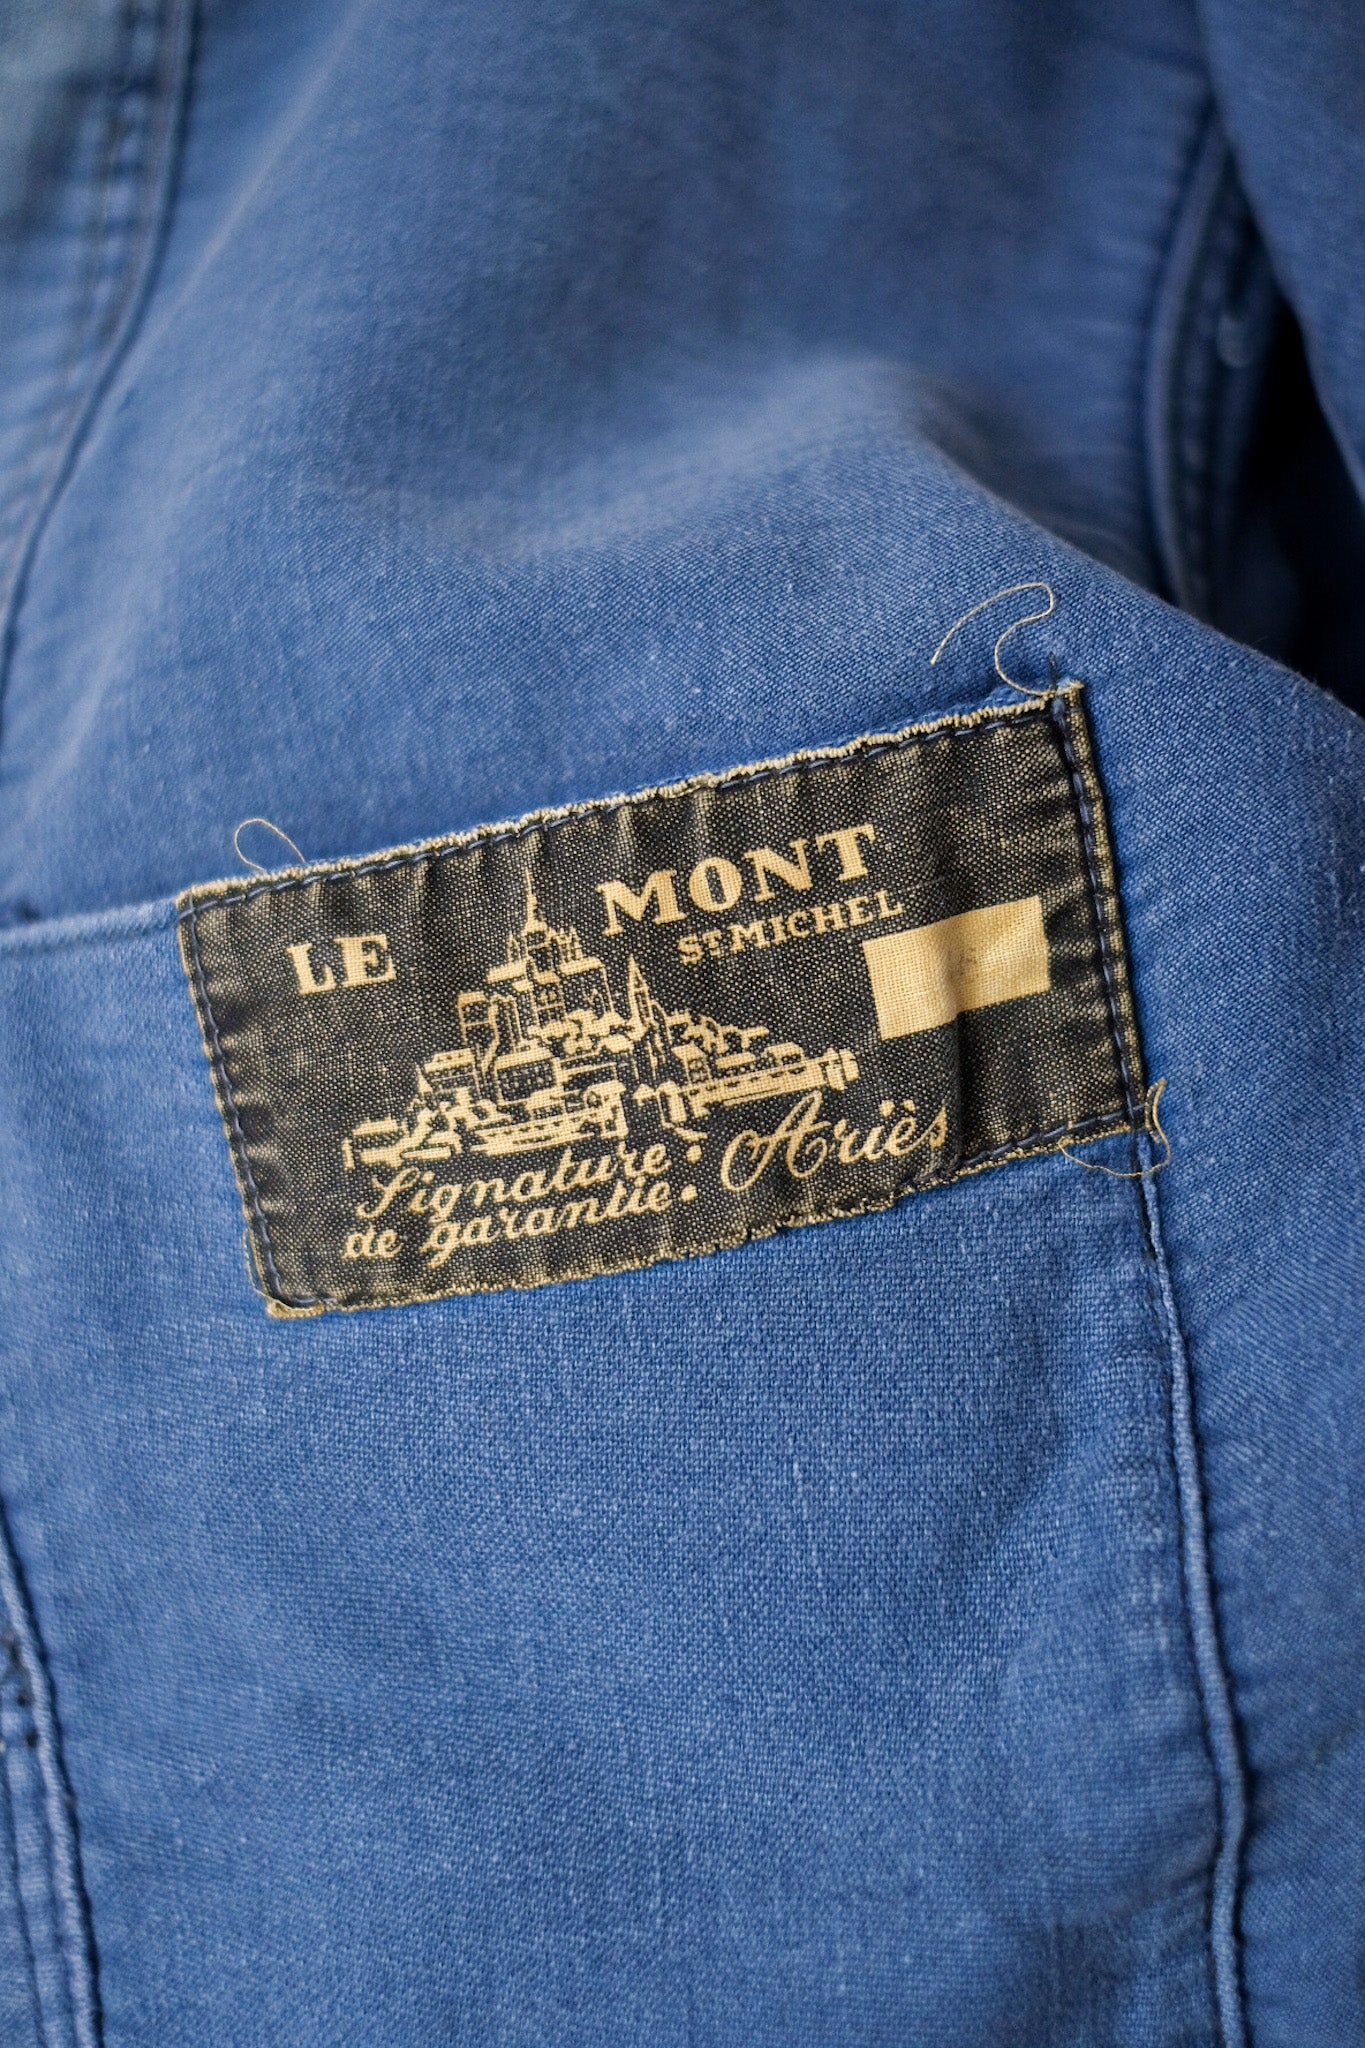 [~ 50's] แจ็คเก็ตงานโมลสกินสีน้ำเงินวินเทจฝรั่งเศส "Le Mont St. Michel"